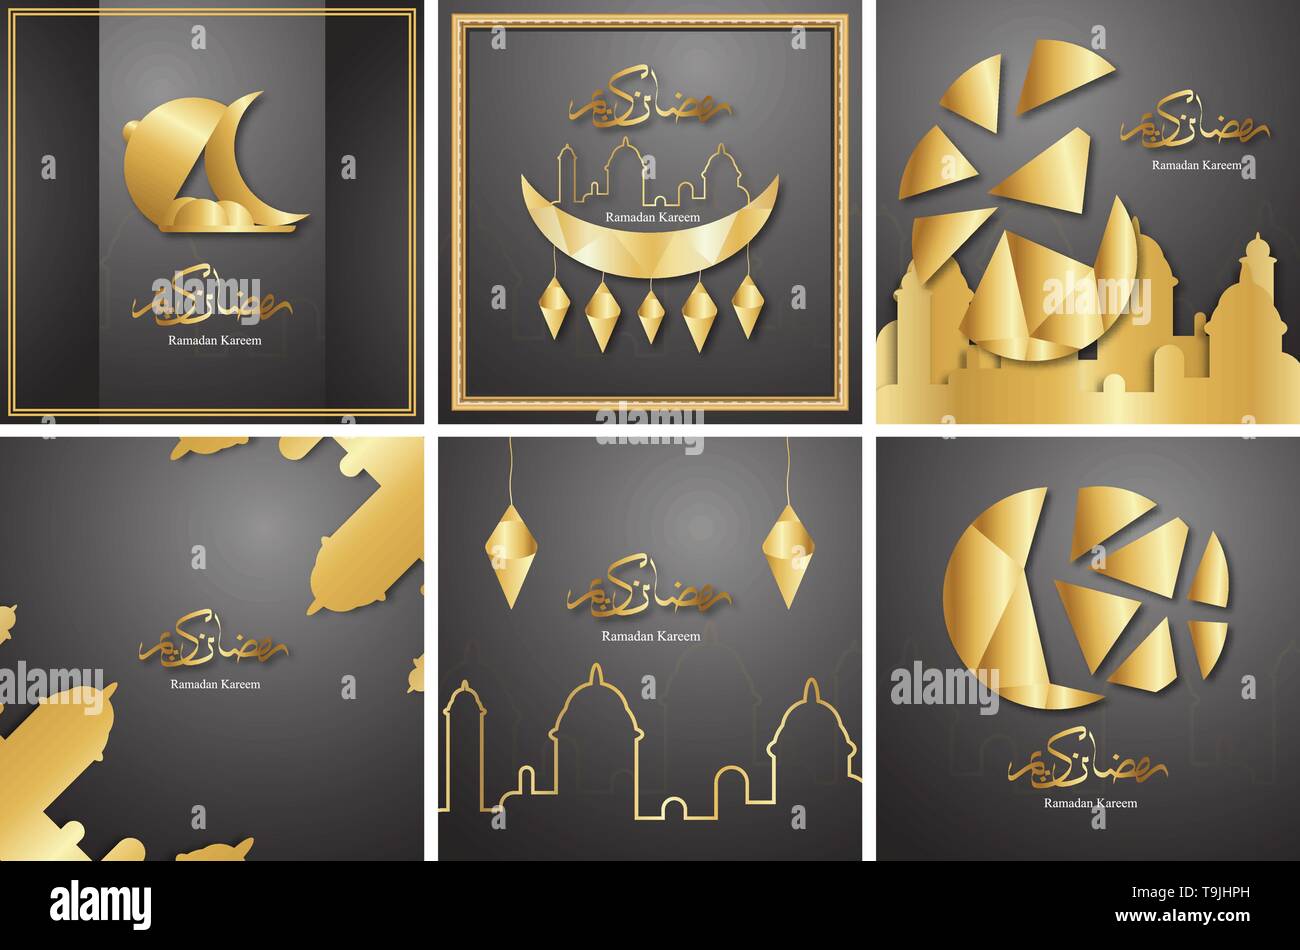 Bundle Vorlage für Ramadan Kareem mit Schwarz und Gold Farbe. 3D-Vektor Design in Papier geschnitten und Handwerk für islamische Grusskarten, Einladung, Buch cov Stock Vektor